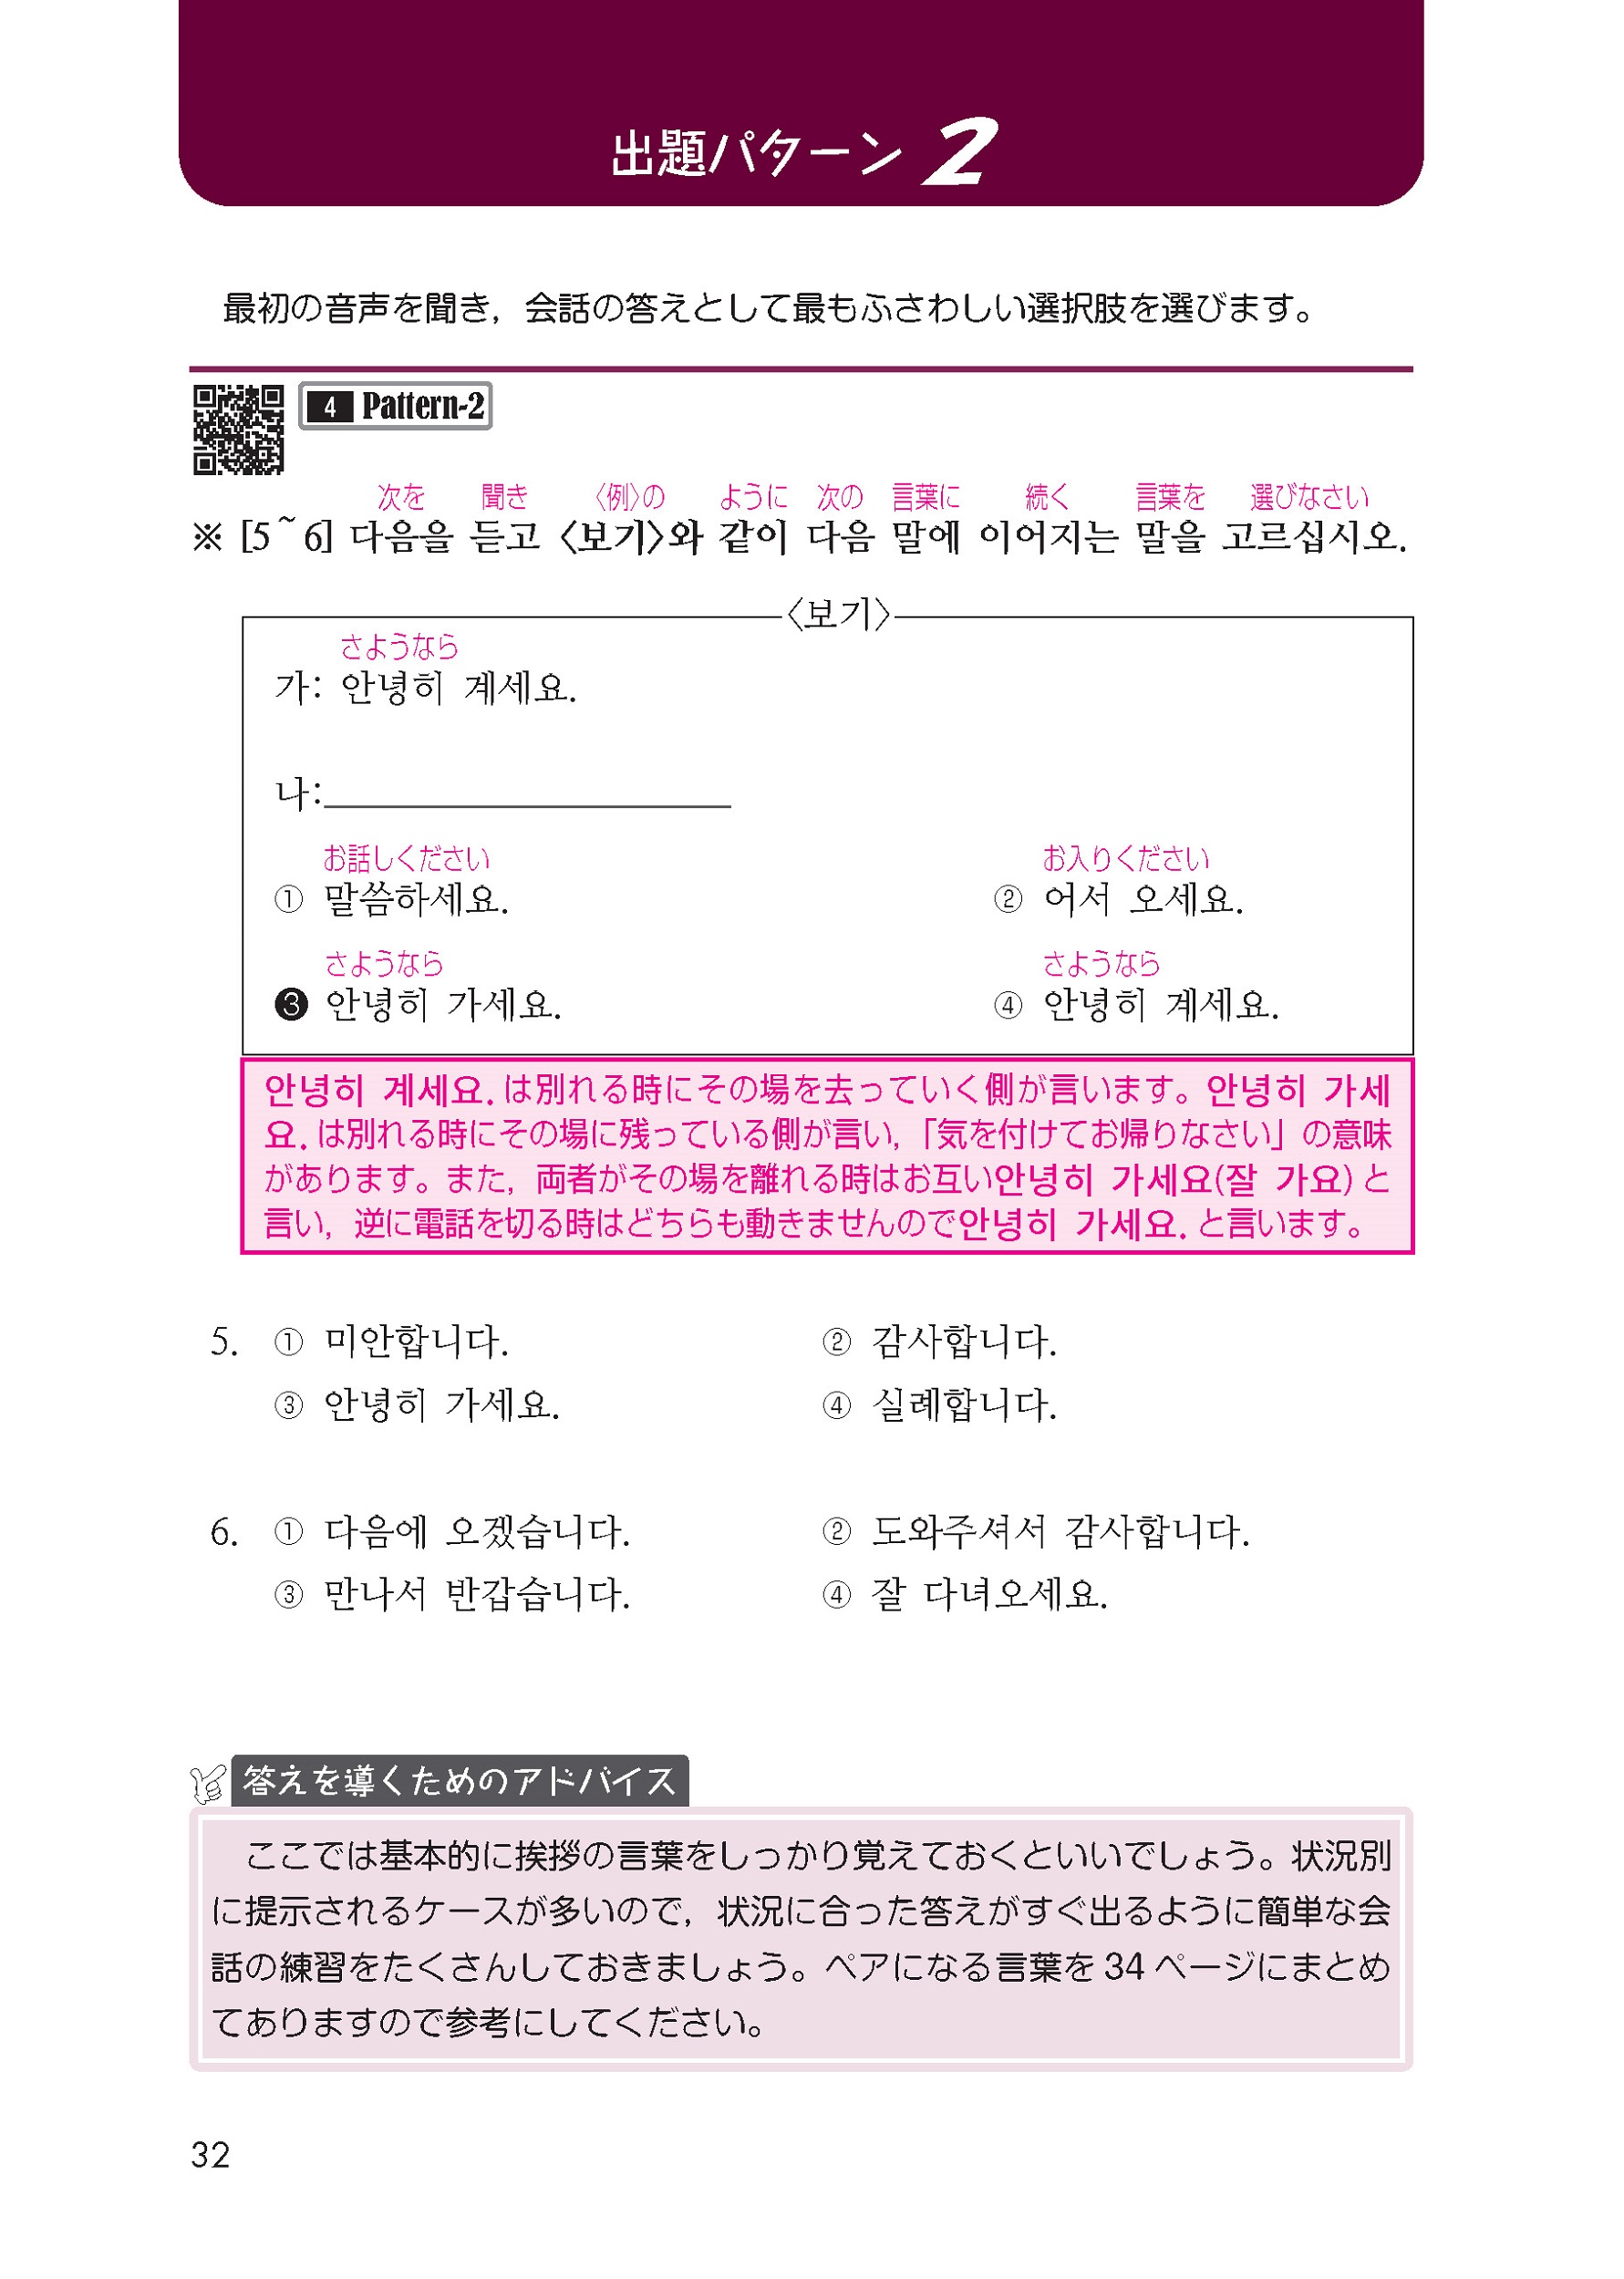 語研 『韓国語能力試験 TOPIK 1・2級初級聞取り対策』河仁南 ISBN978-4-87615-363-3（ためし読みPDFあり）